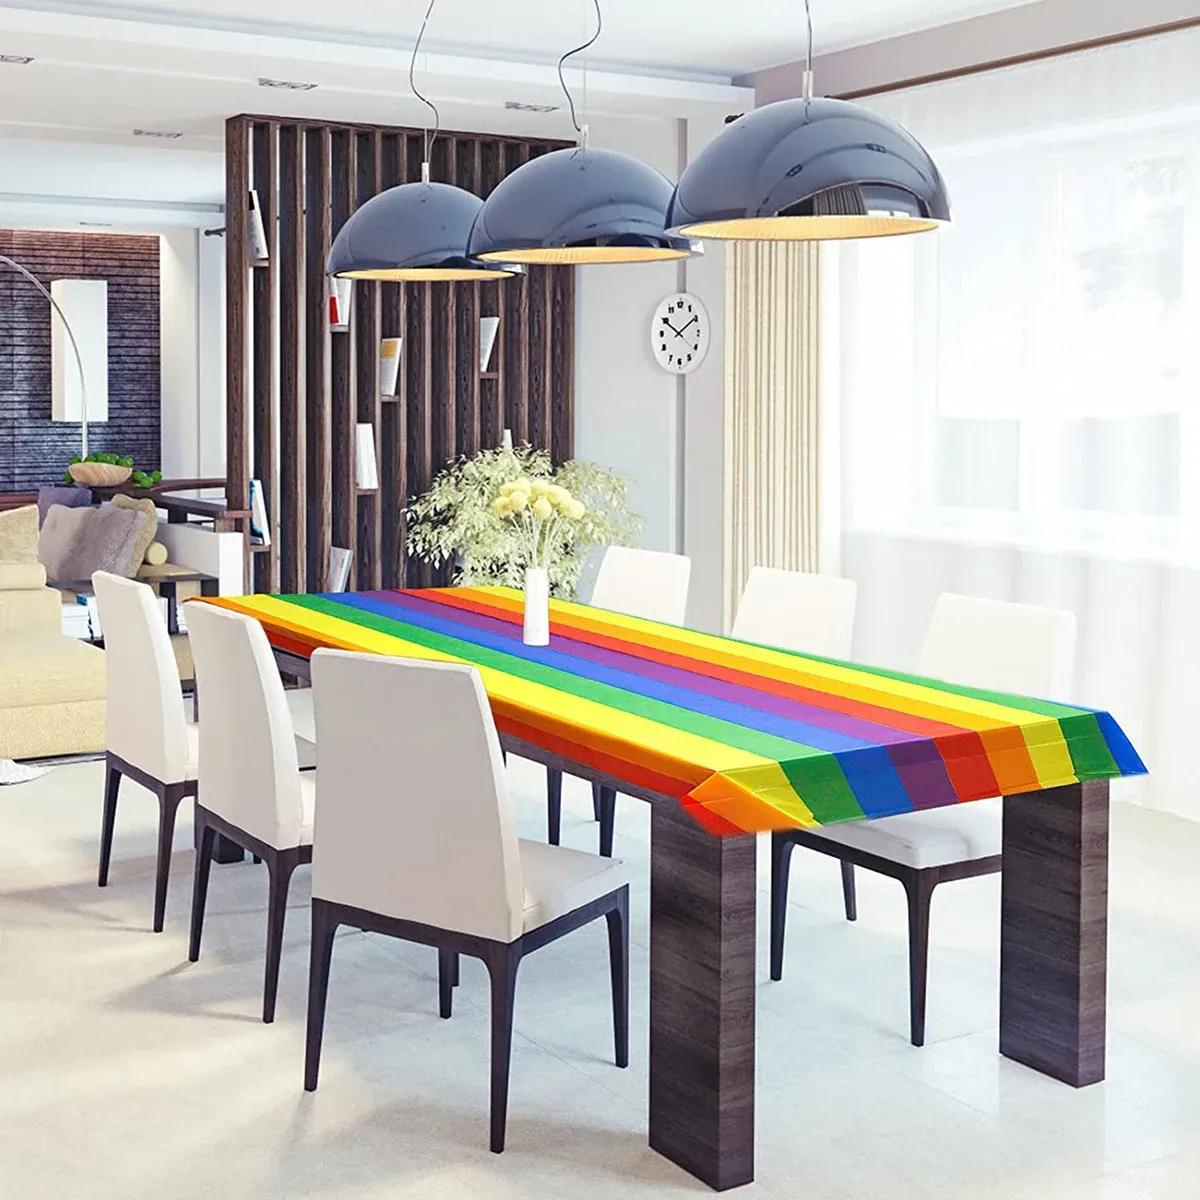 1/2/4pcs Regenbogentisch Tischdecke ectangular dekorativ farbenfrohe Tischtuch Bunt Regenbogen Thema Geburtstage Partyzubehör